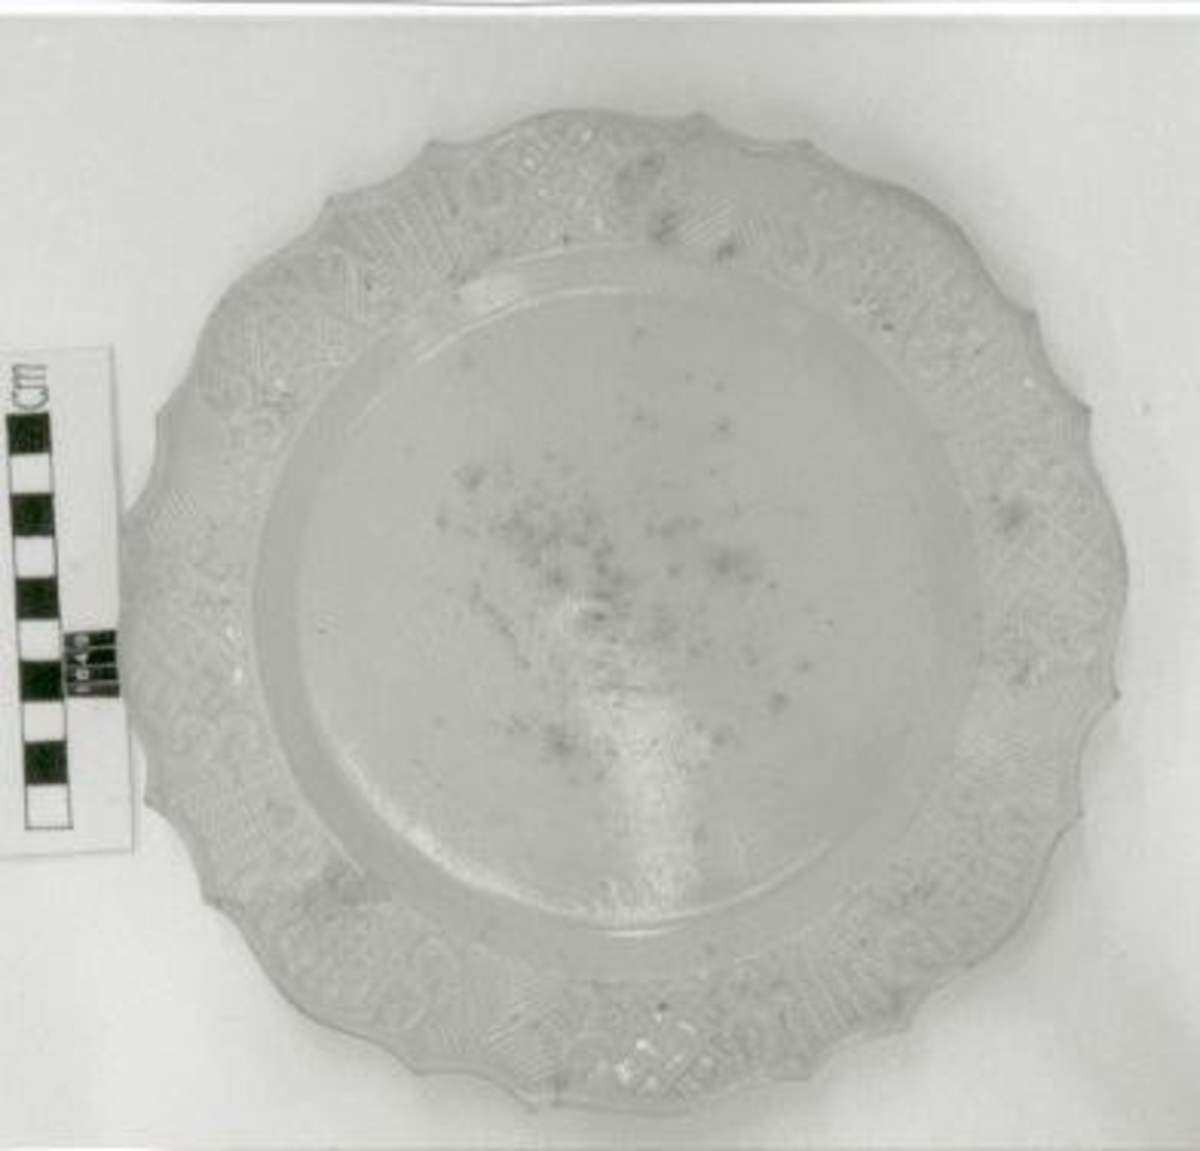 Reliefdekor på brättet, f. ö. slät, grå- beige ton på glasyren. Omärkt.
 
Se Hannover, E: Keramisk handbok I s. 522, fig. 650.